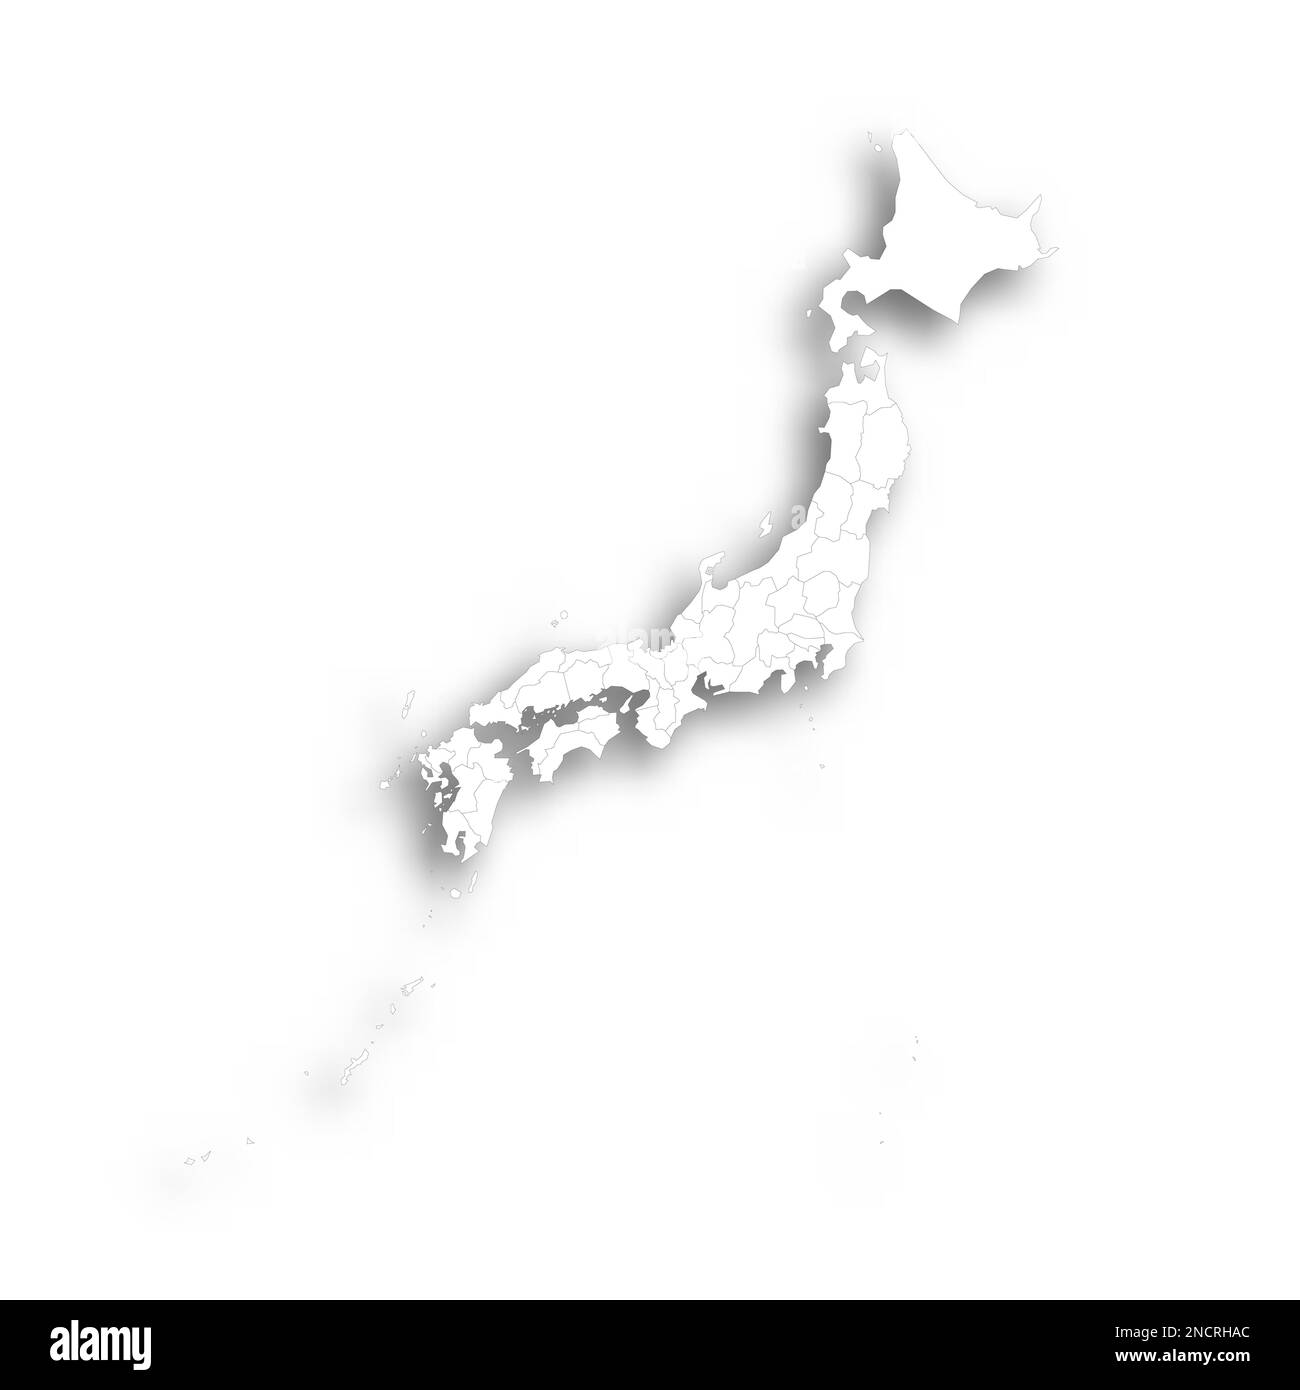 Japon carte politique des divisions administratives - préfectures, métropilis Tokyo, territoire Hokaïdo et préfectures urbaines Kyoto et Osaka. Carte blanche plate avec contour noir fin et ombre portée. Illustration de Vecteur